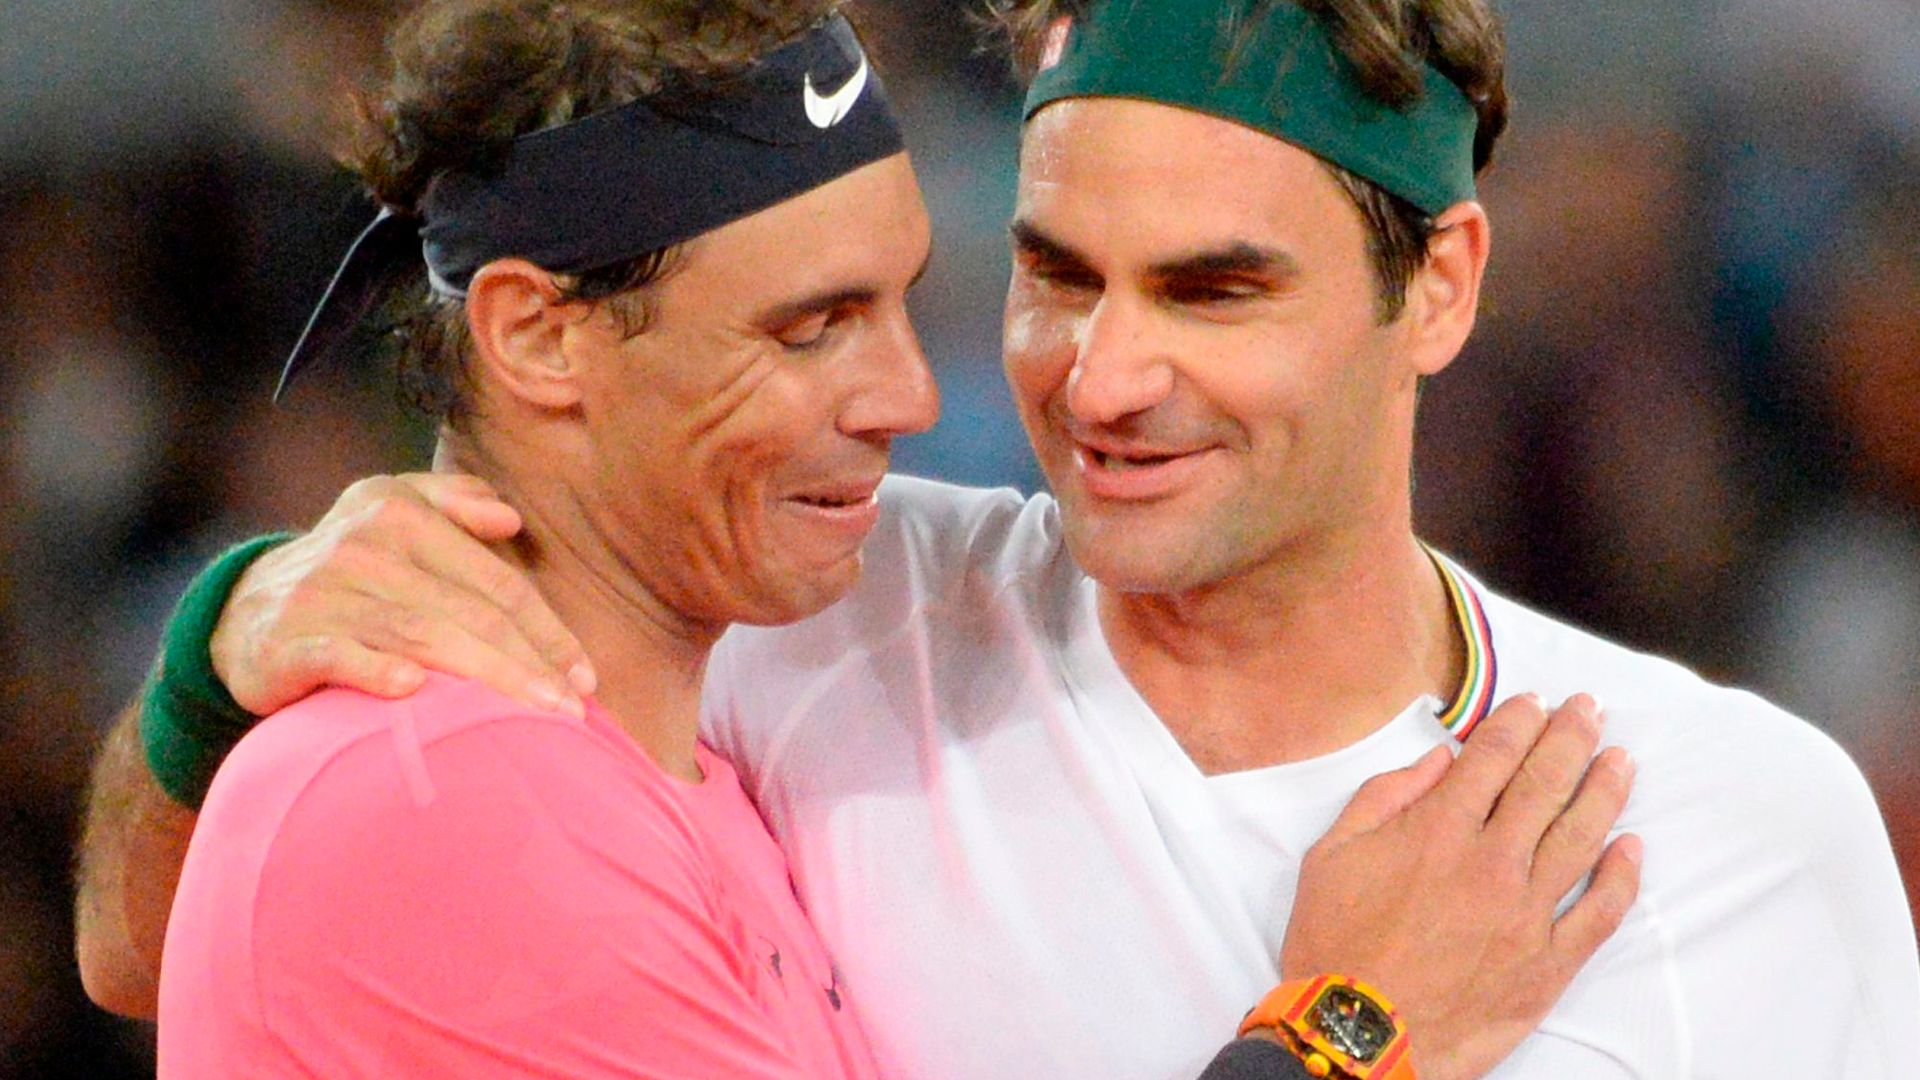 Federer will play final match alongside Rafa | 'The most beautiful thing'